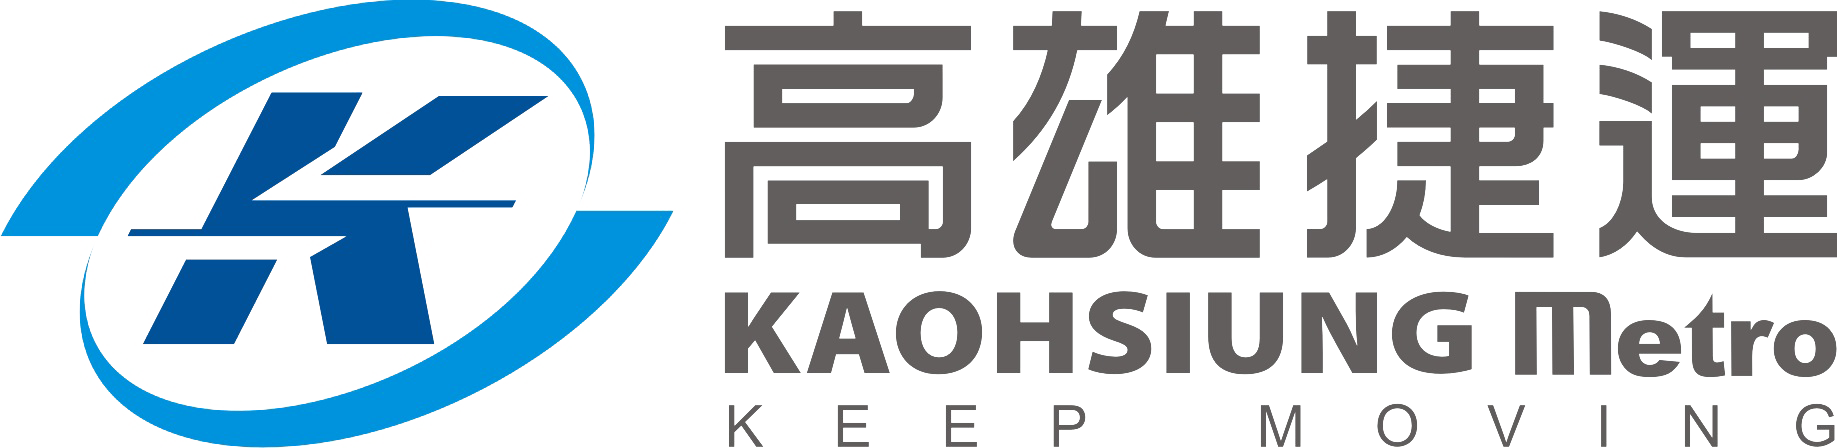 高雄 捷 運 logo